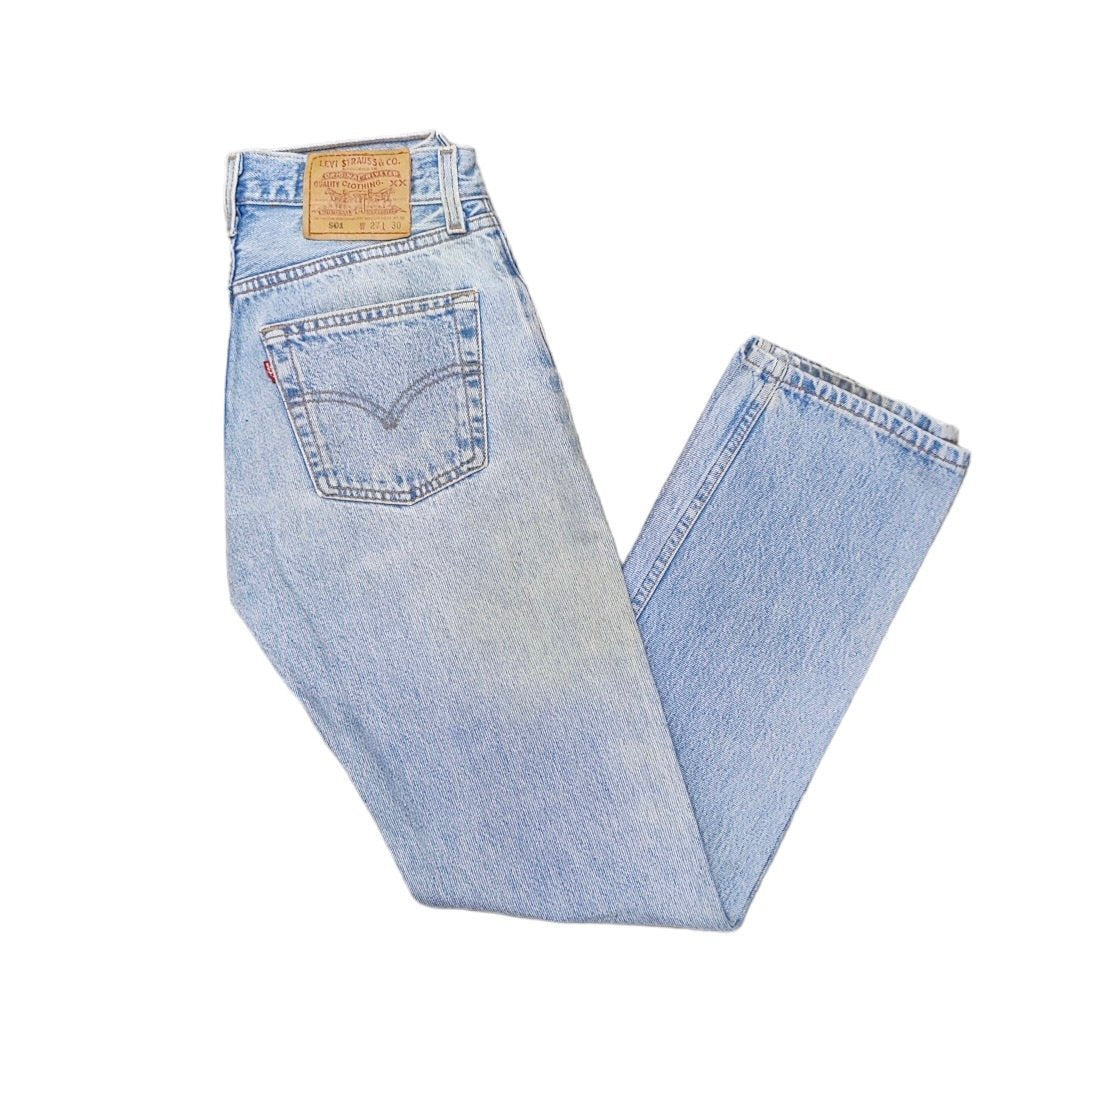 Vintage Levis 501 Light Blue Jeans (W27/L30) (W)